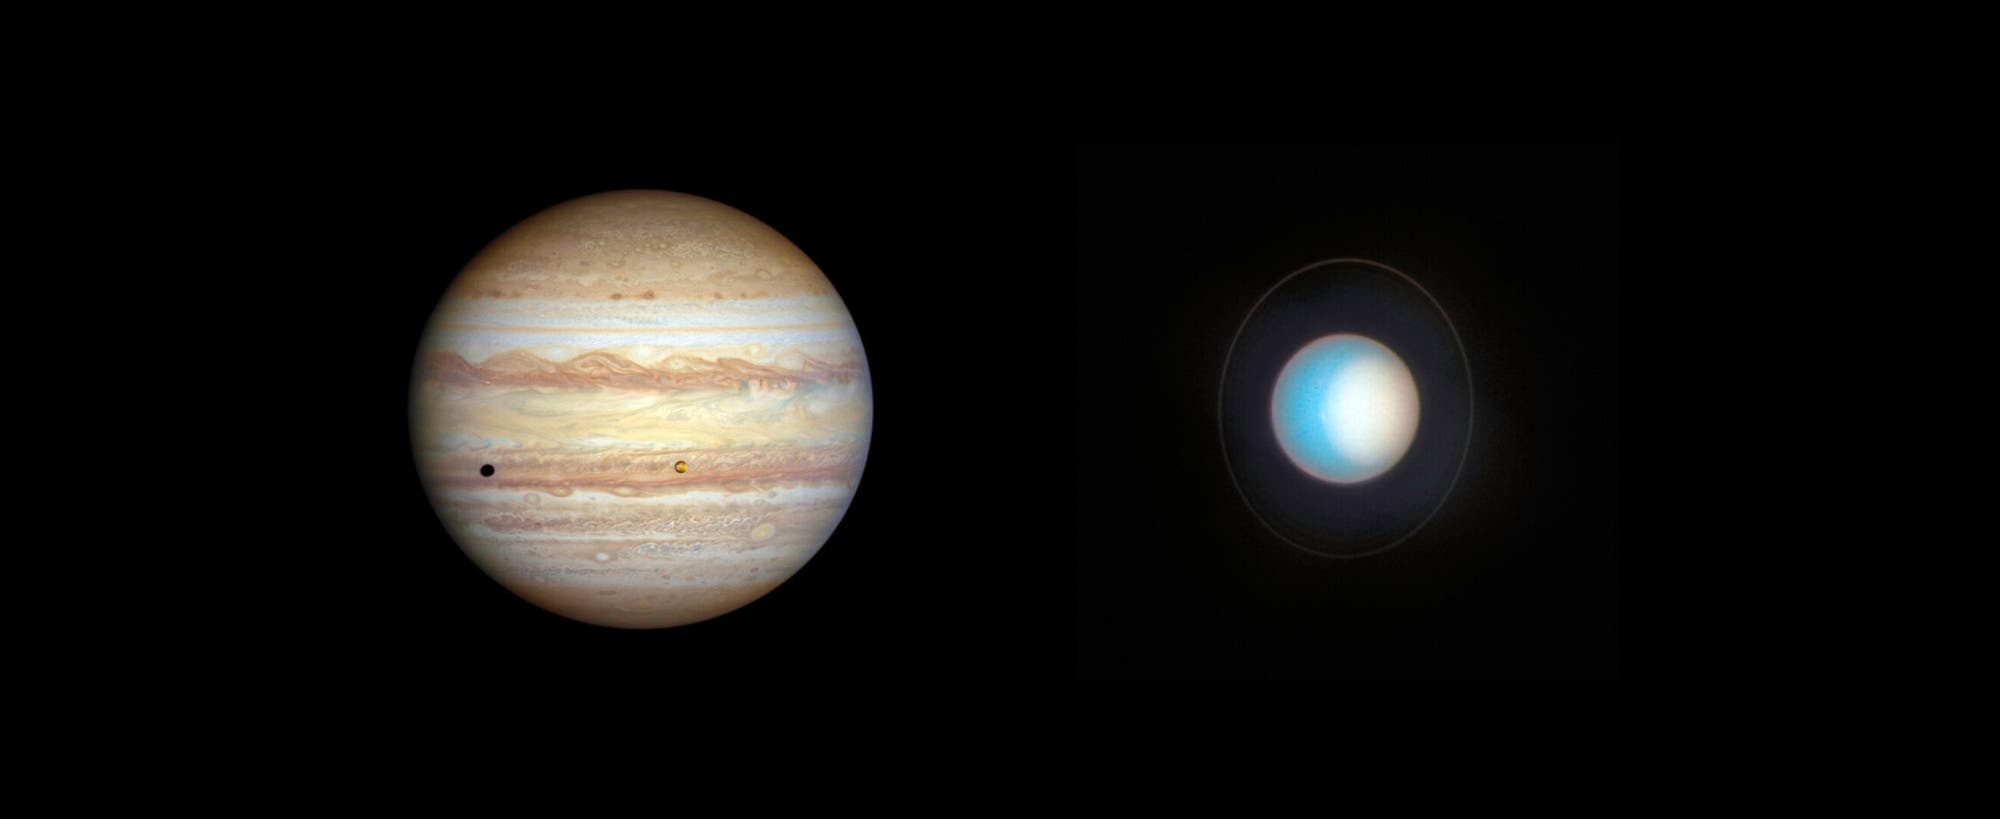 Bilder von Jupiter und Uranus nebeneinander montiert.